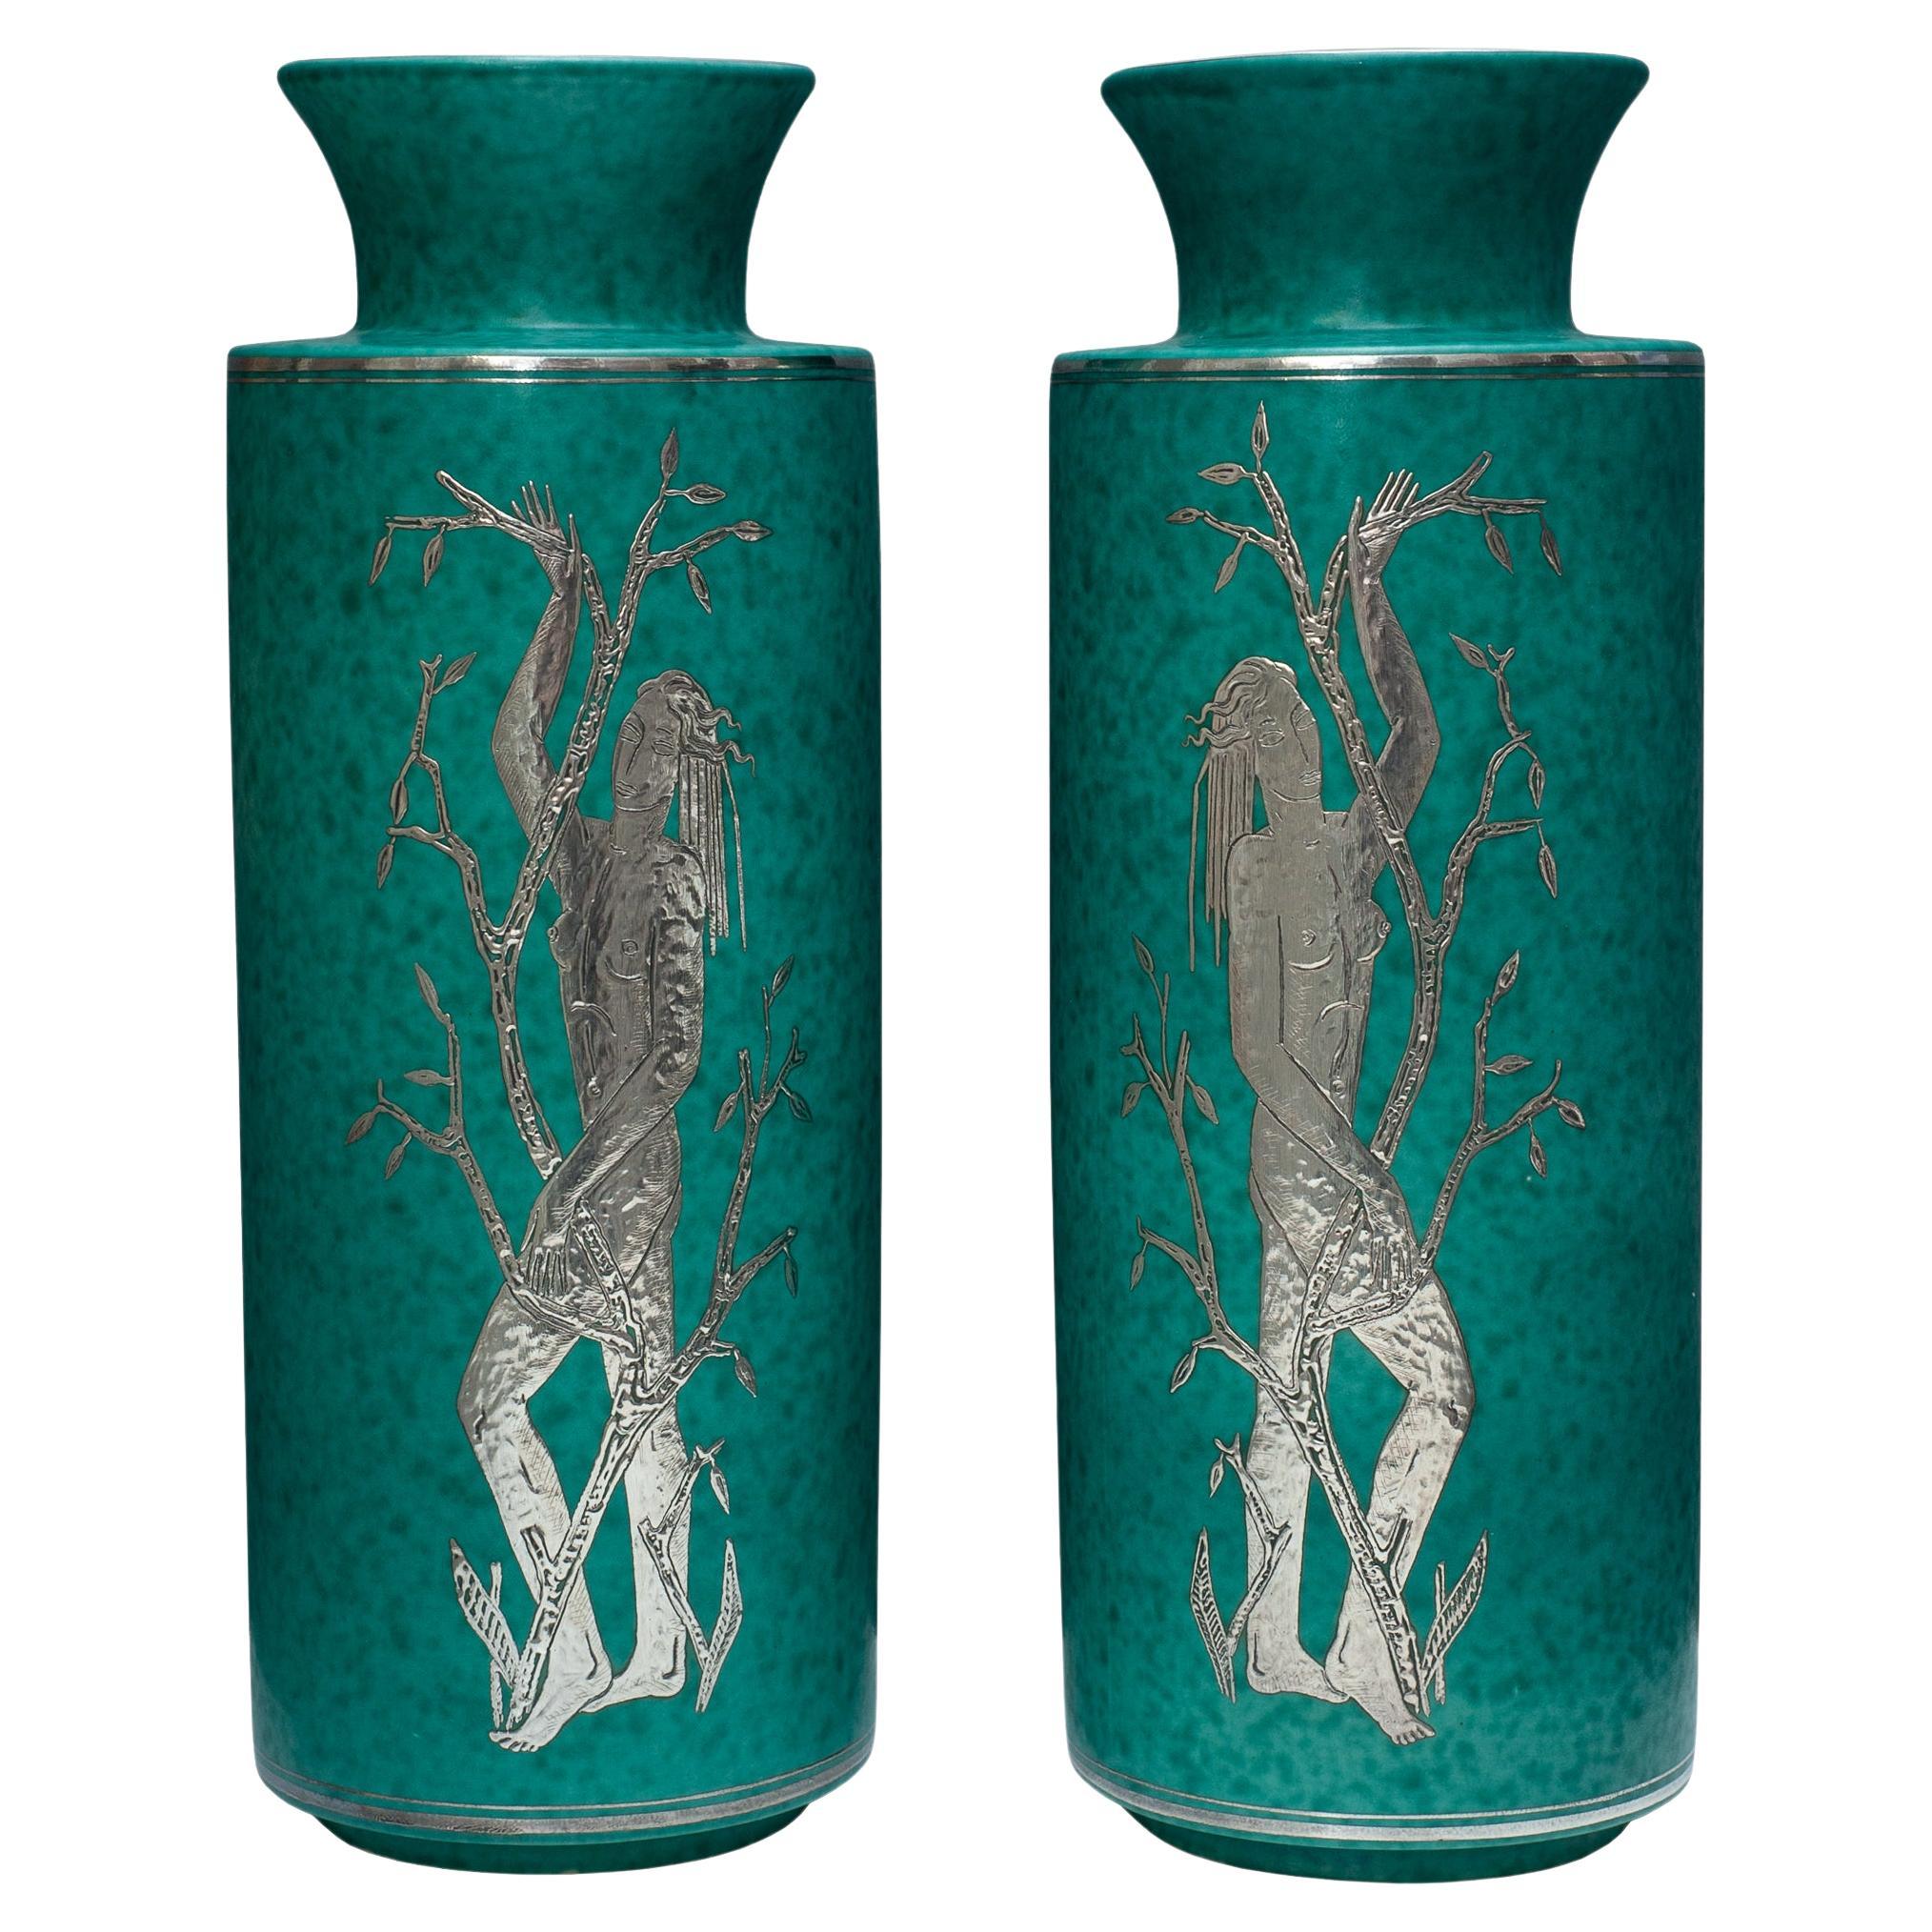 Pair of Gustavsberg ‘Argenta’ Green Glazed Vases by Wilhelm Kåge